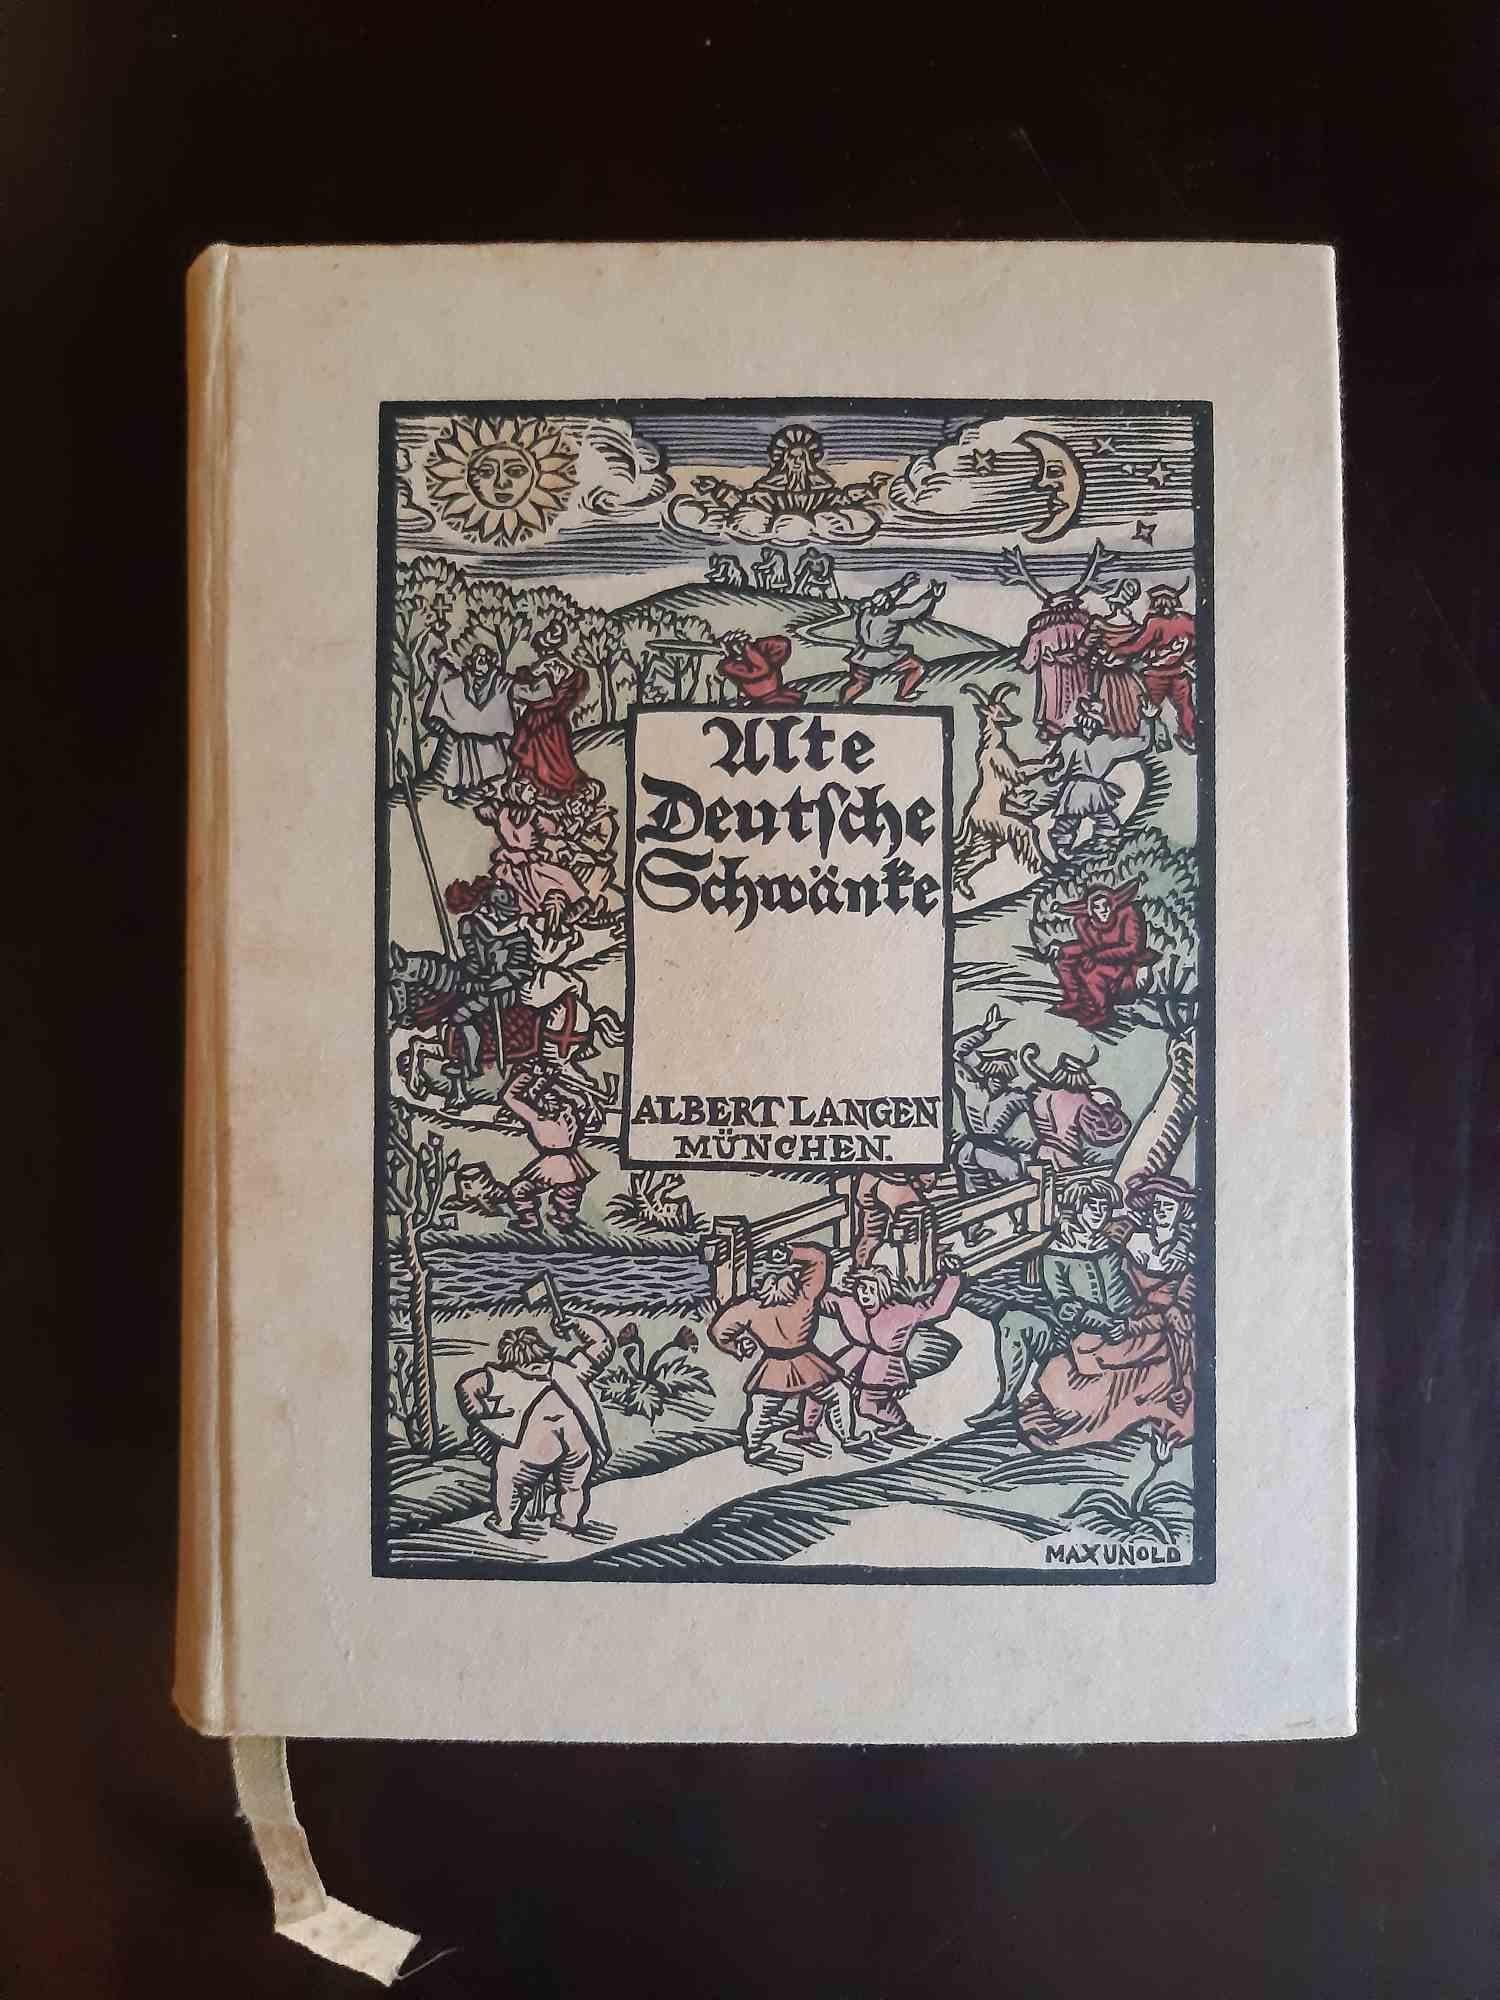 Alte Deutsche Schwanke ist ein modernes, seltenes Originalbuch, das 1914 von Max Unold (Memmingen, 1885 - München, 1964) illustriert wurde.

Original-Erstausgabe. Limitierte Auflage von 800 nummerierten Exemplaren. Herausgegeben vom Albert Langen